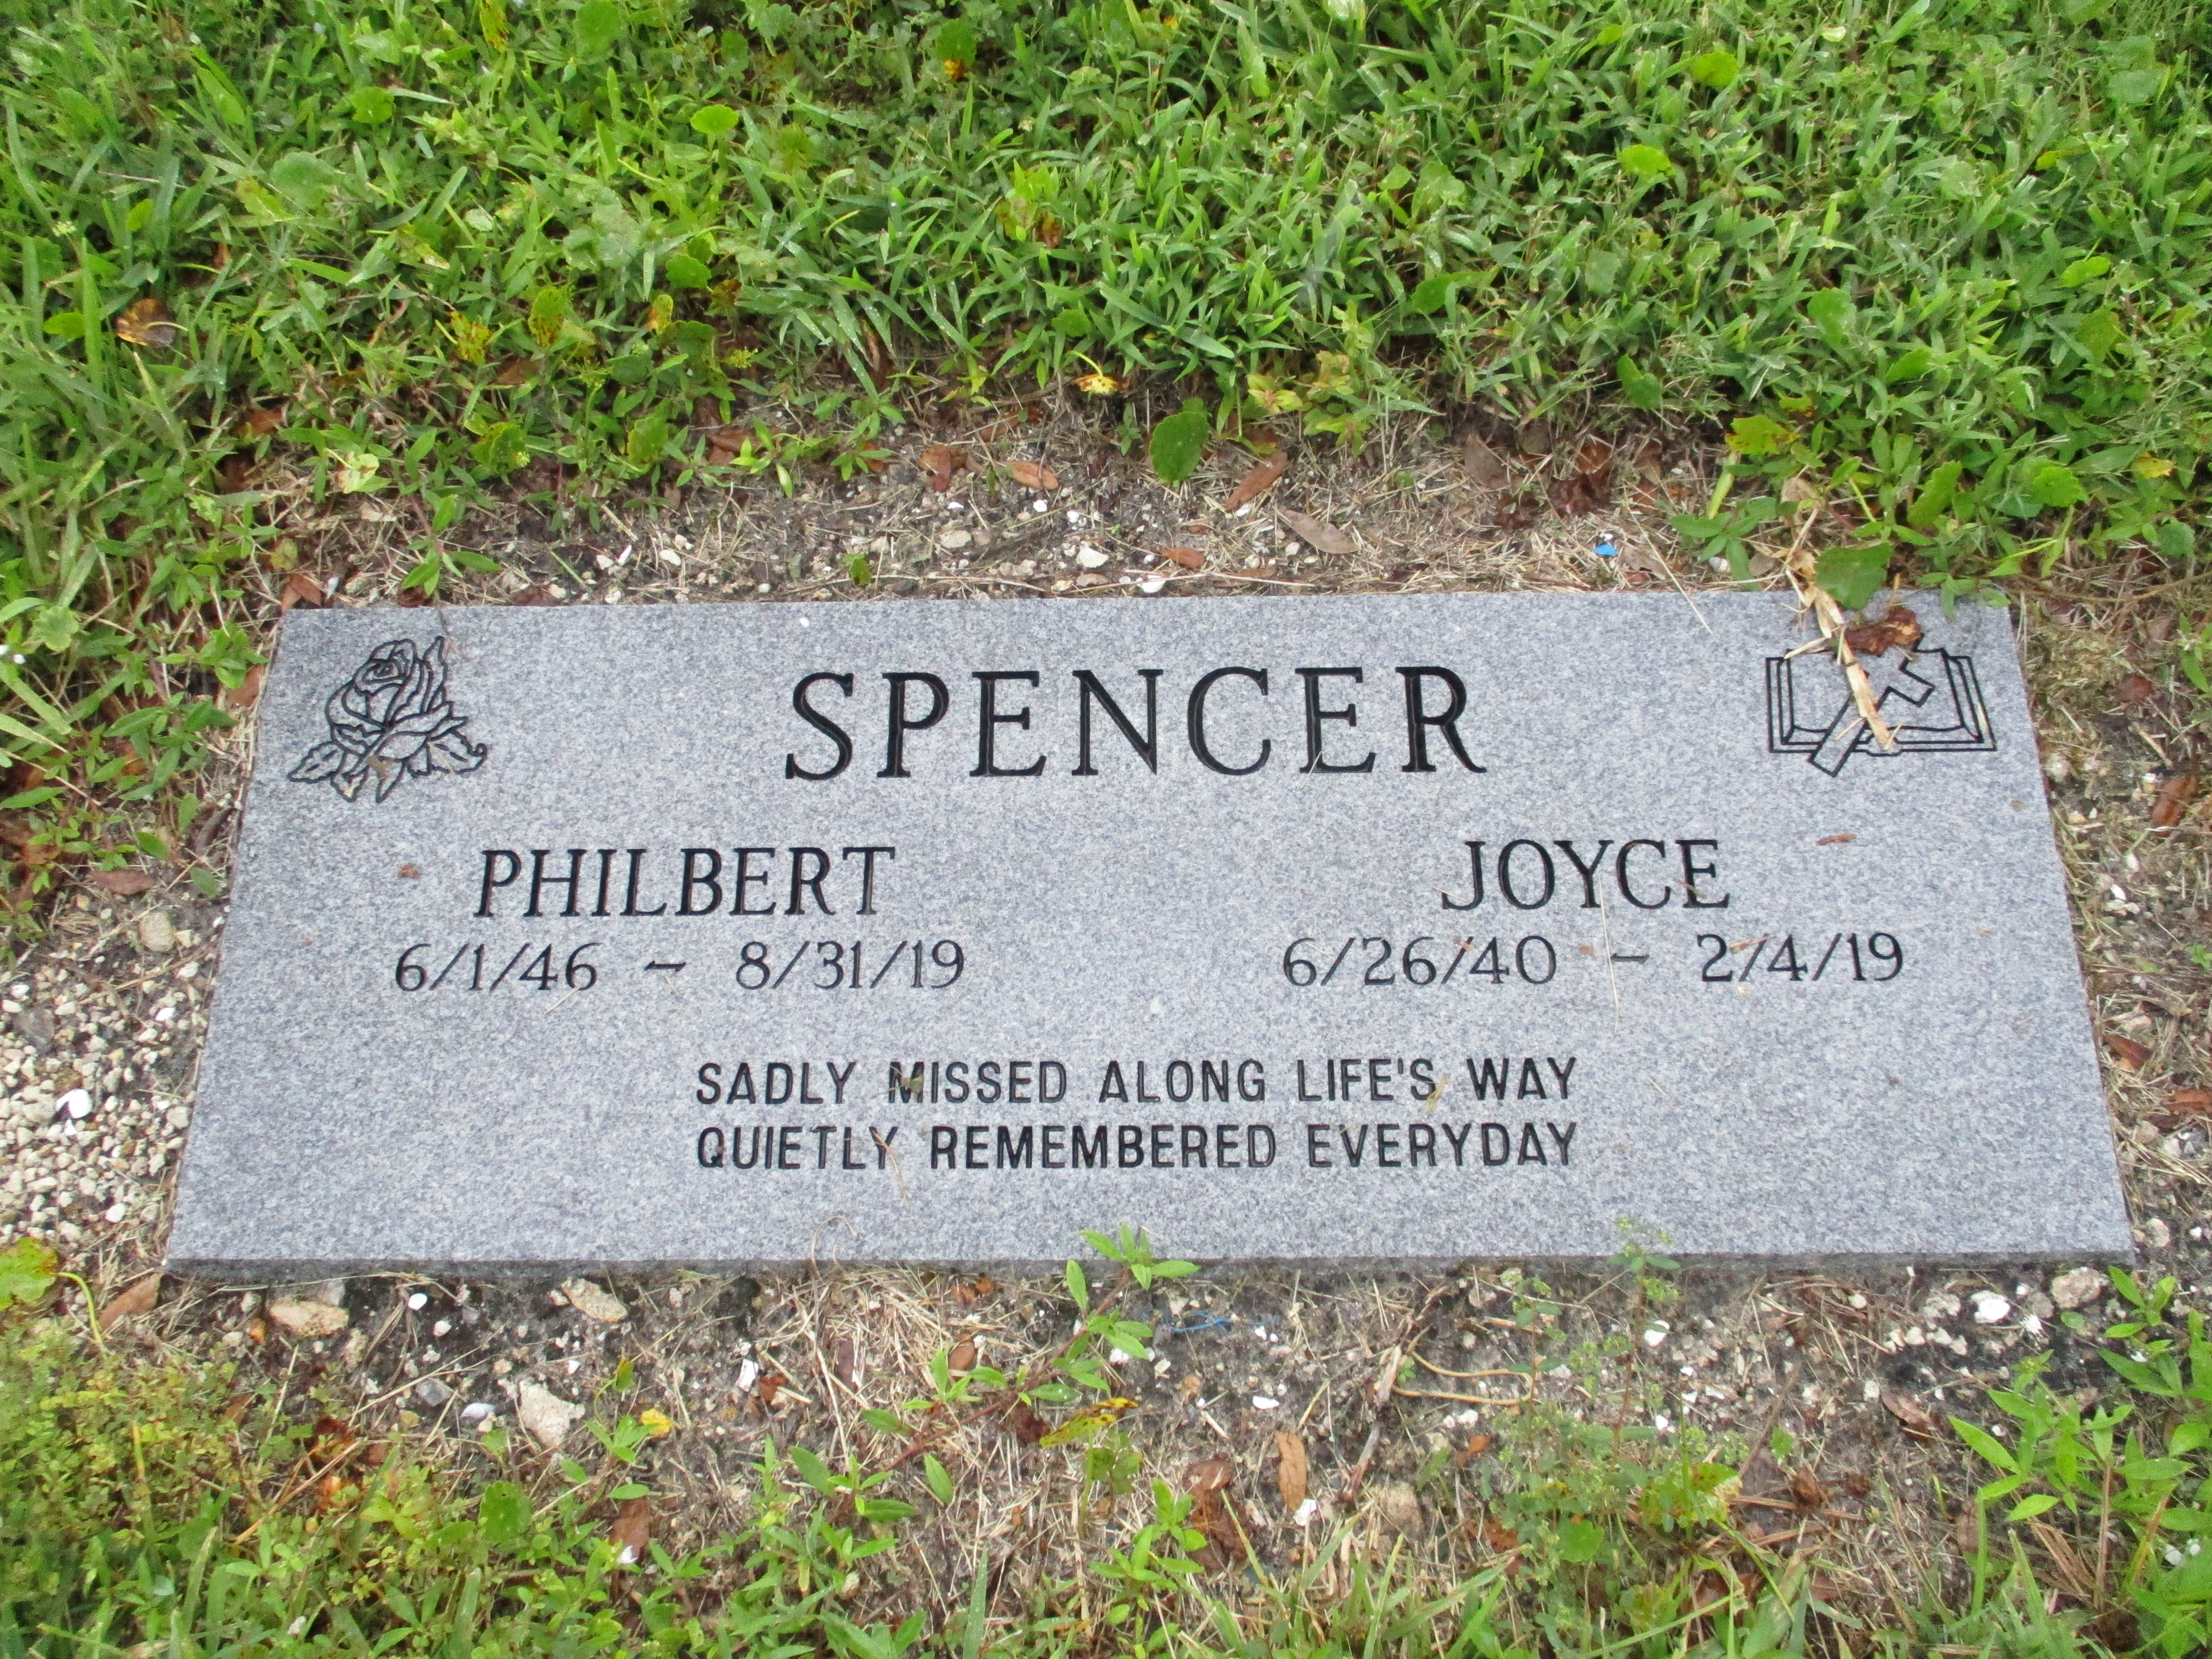 Philbert Spencer